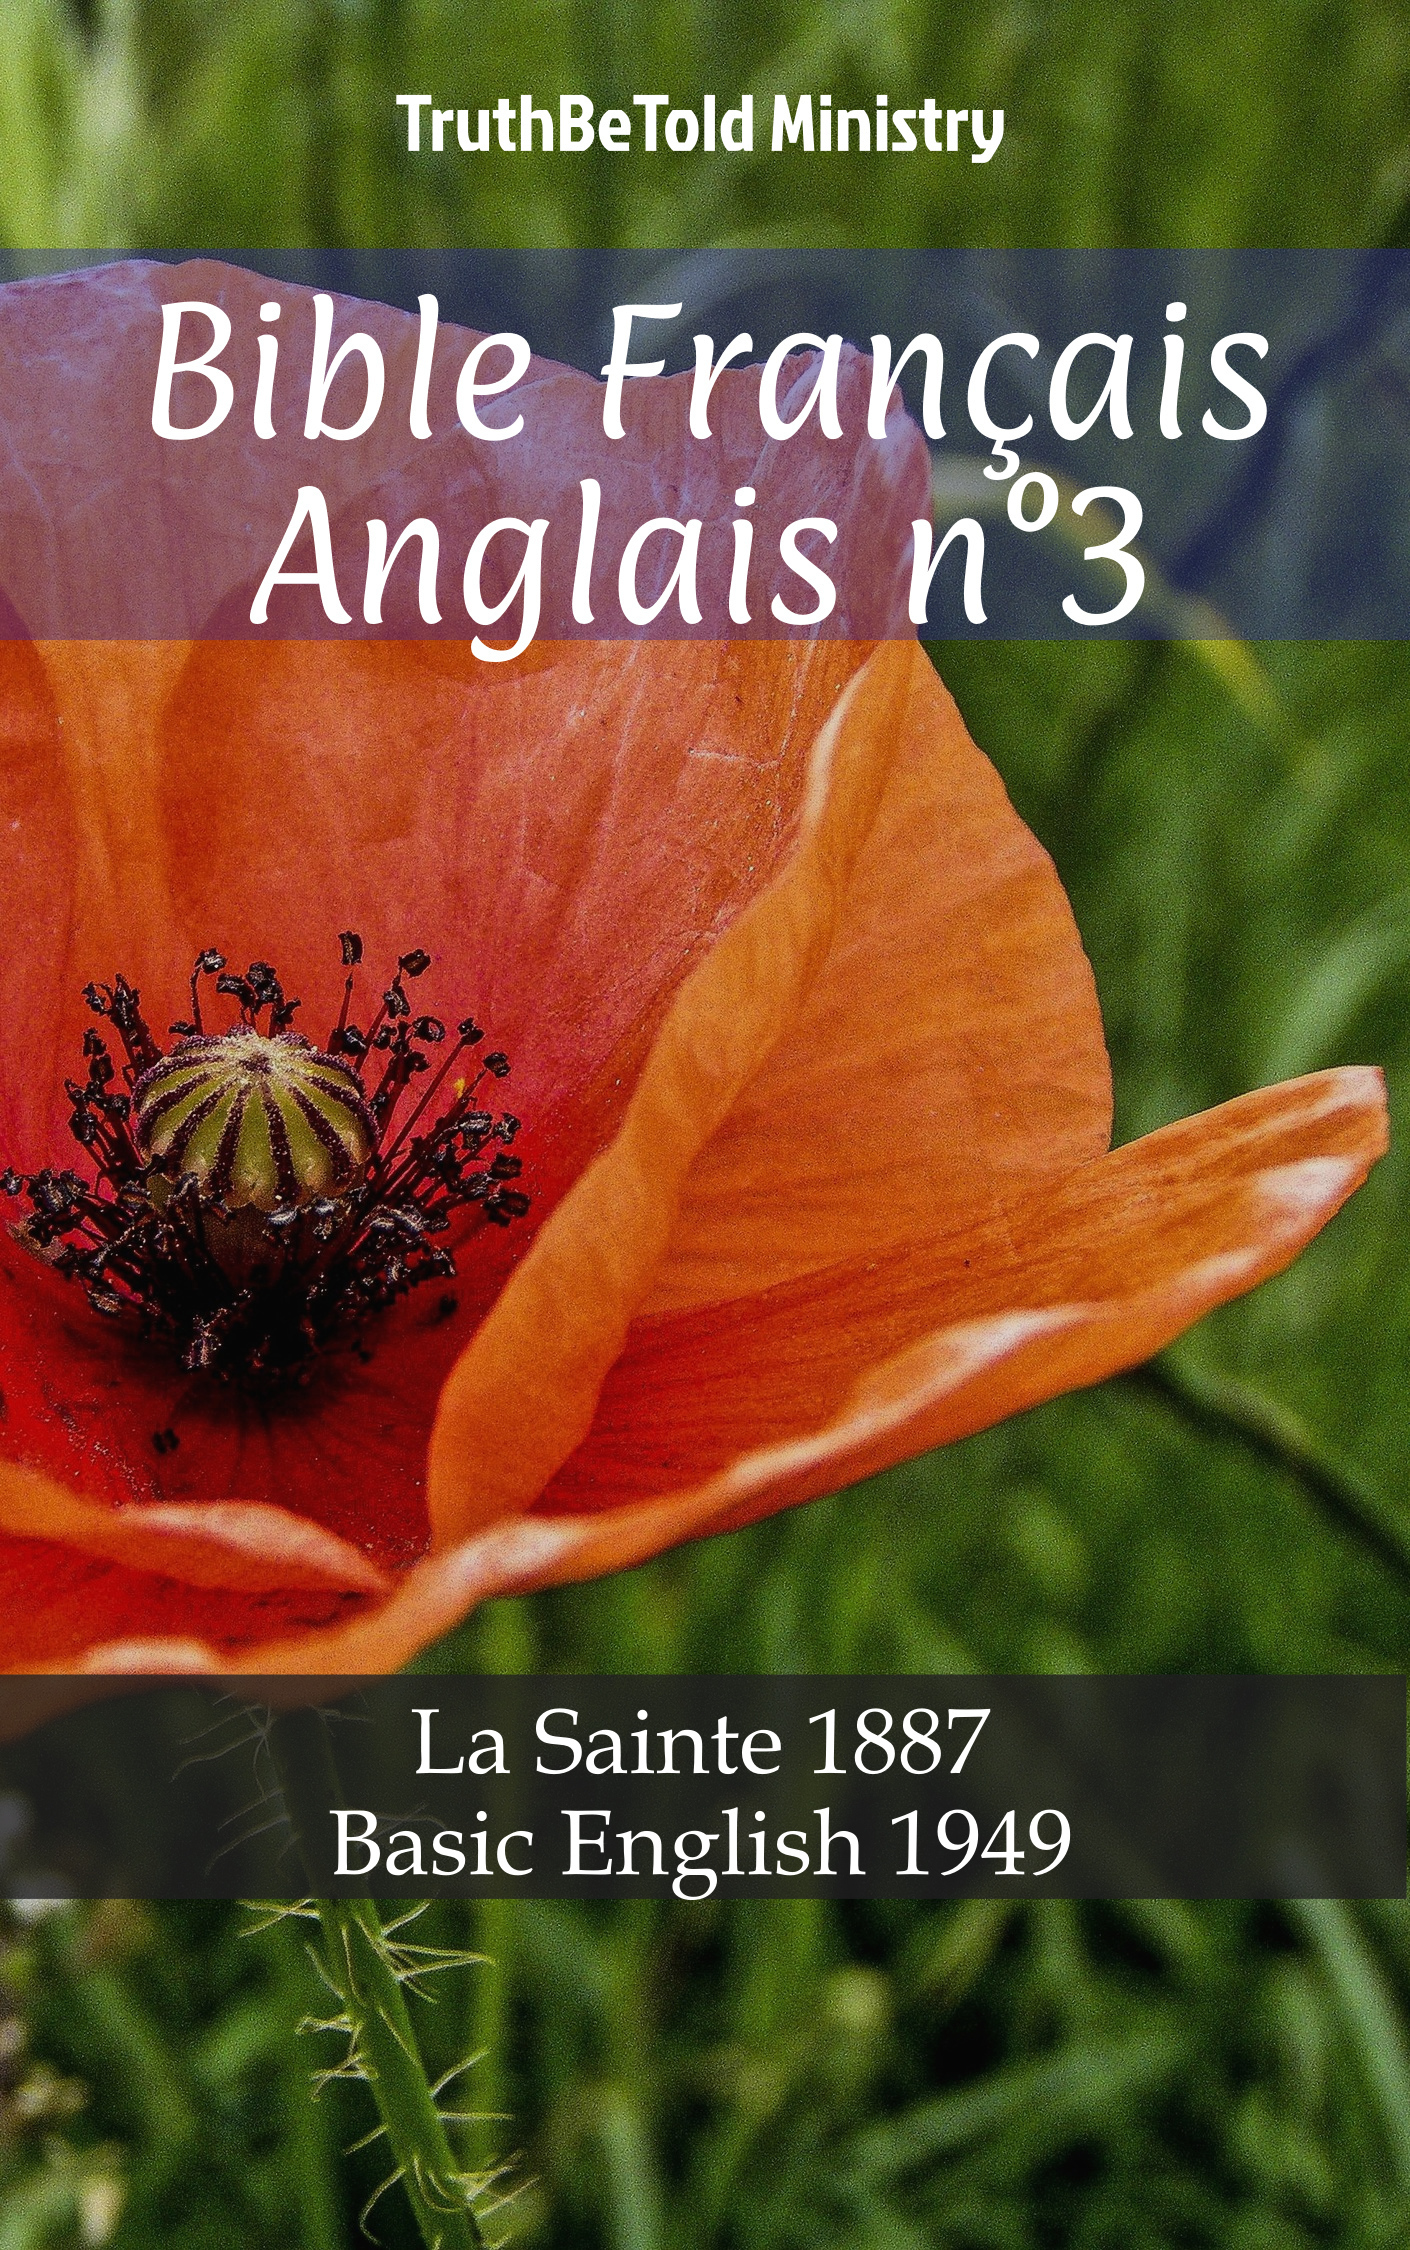 Bible Français Anglais n°3